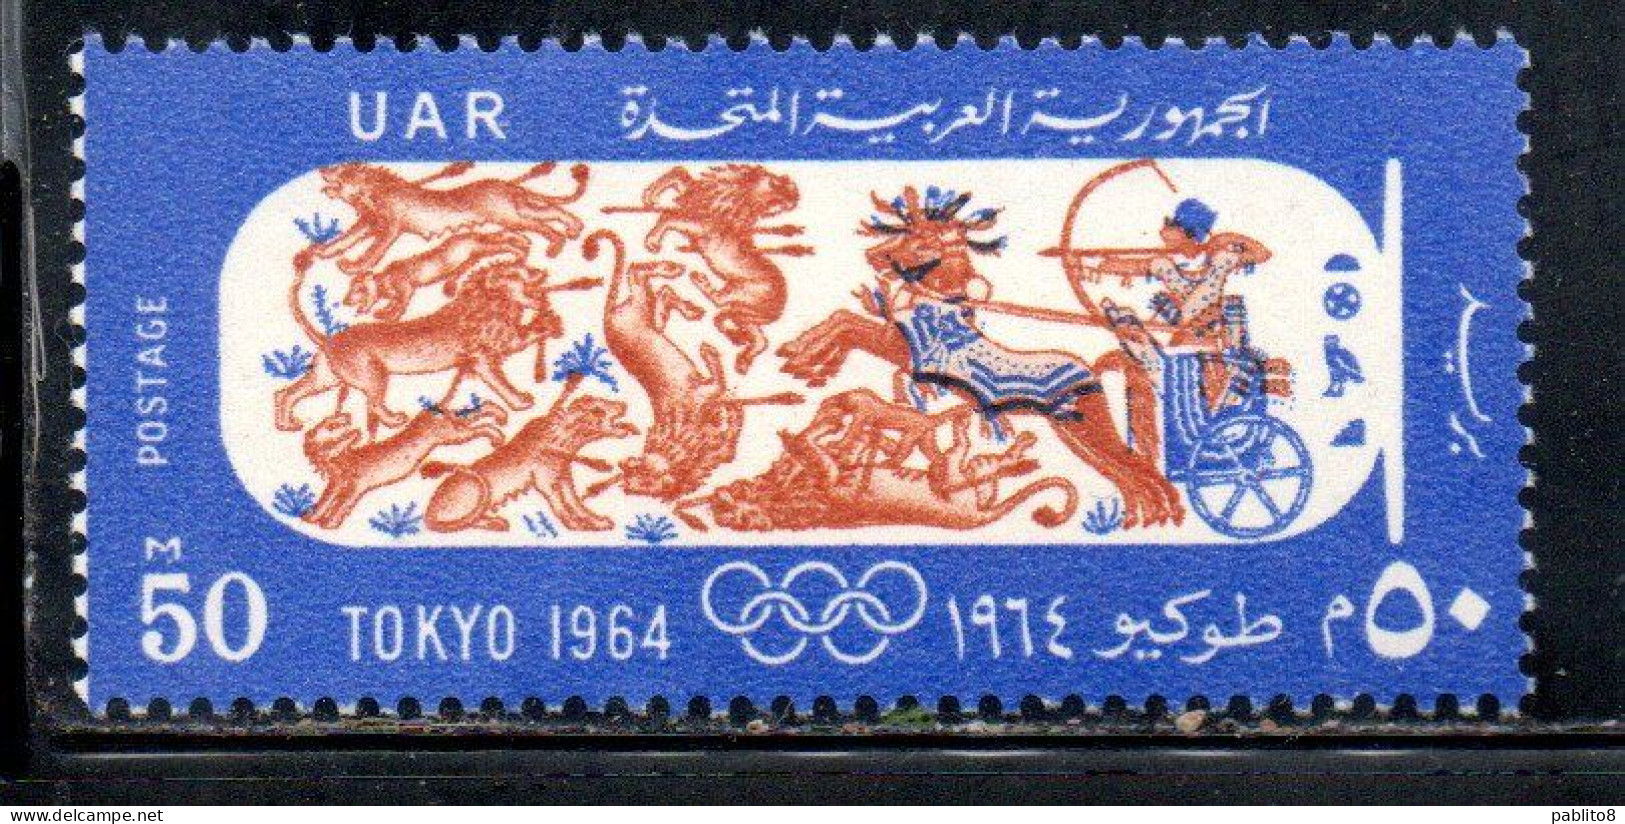 UAR EGYPT EGITTO 1964 OLYMIC GAMES TOKYO PHARAOH IN CHARIOT HUNTING 50m MNH - Ongebruikt